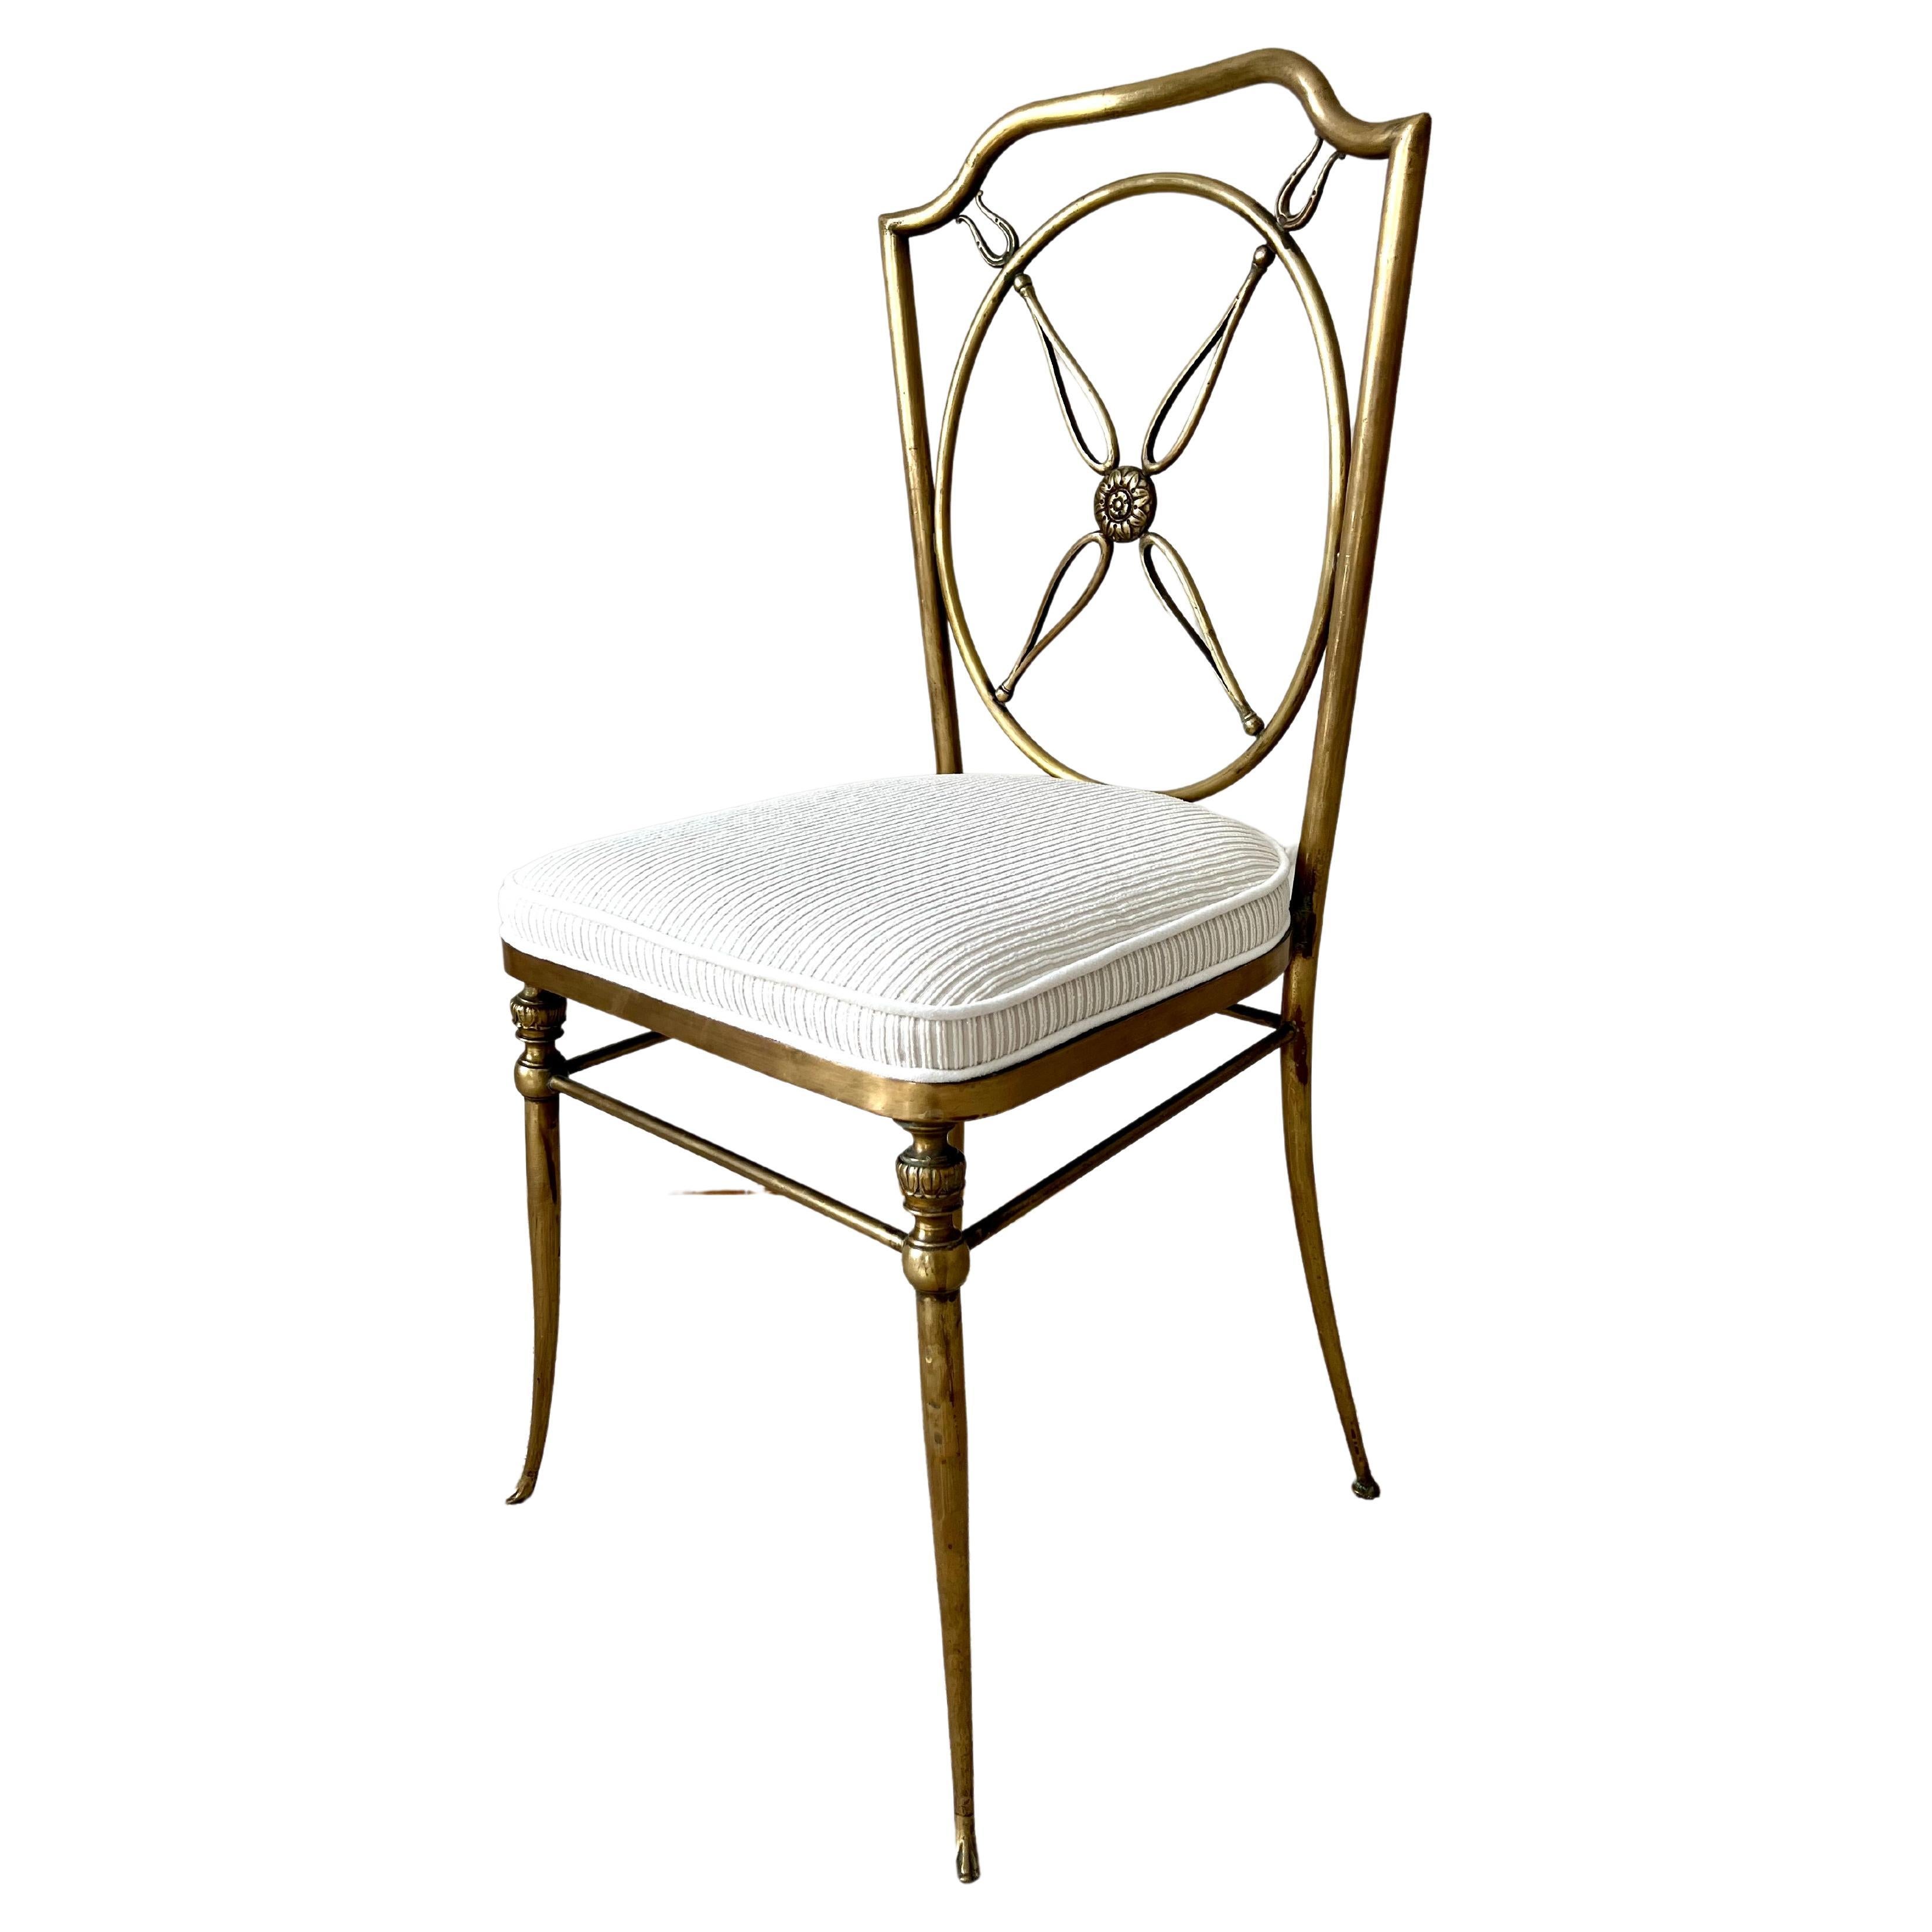 Ensemble de quatre chaises en laiton dans le style de Gio Ponti, avec un dossier en forme de compas et des détails floraux. Le magnifique laiton patiné est complété par des coussins nouvellement rembourrés présentant une subtile rayure chatoyante. 

